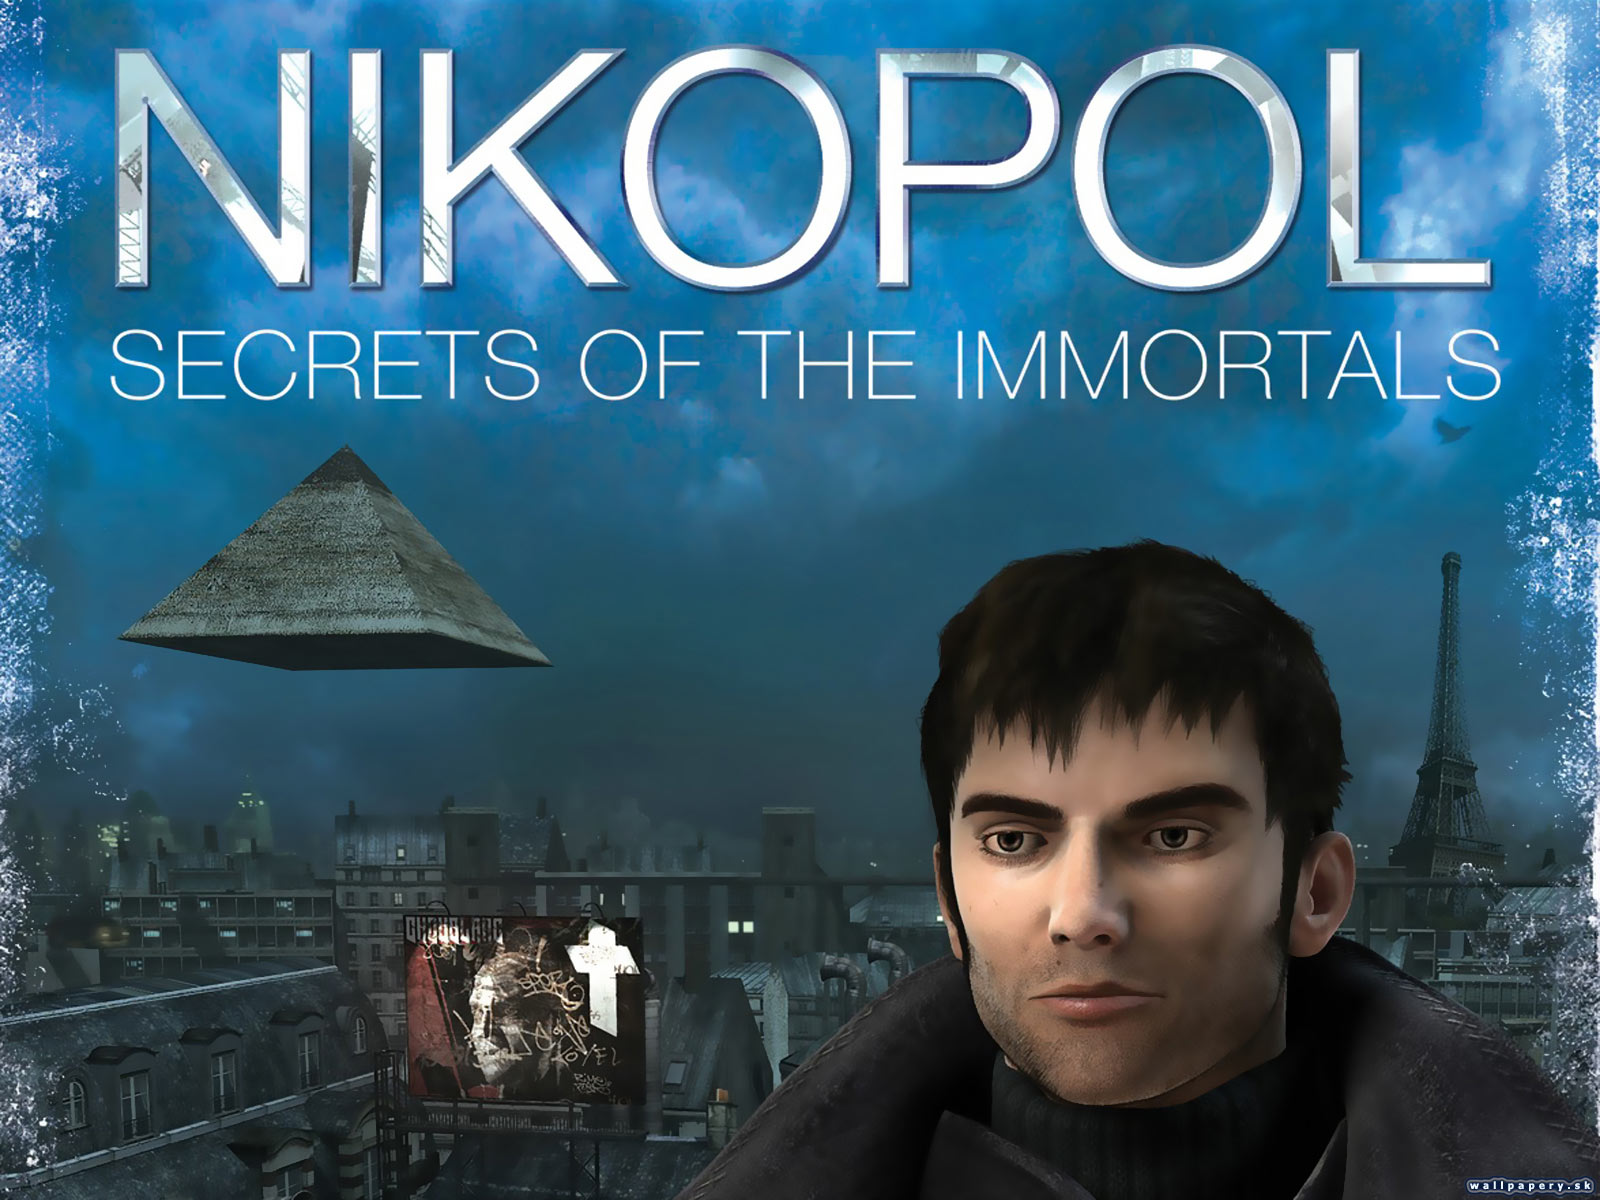 Nikopol: Secrets of the Immortals - wallpaper 4